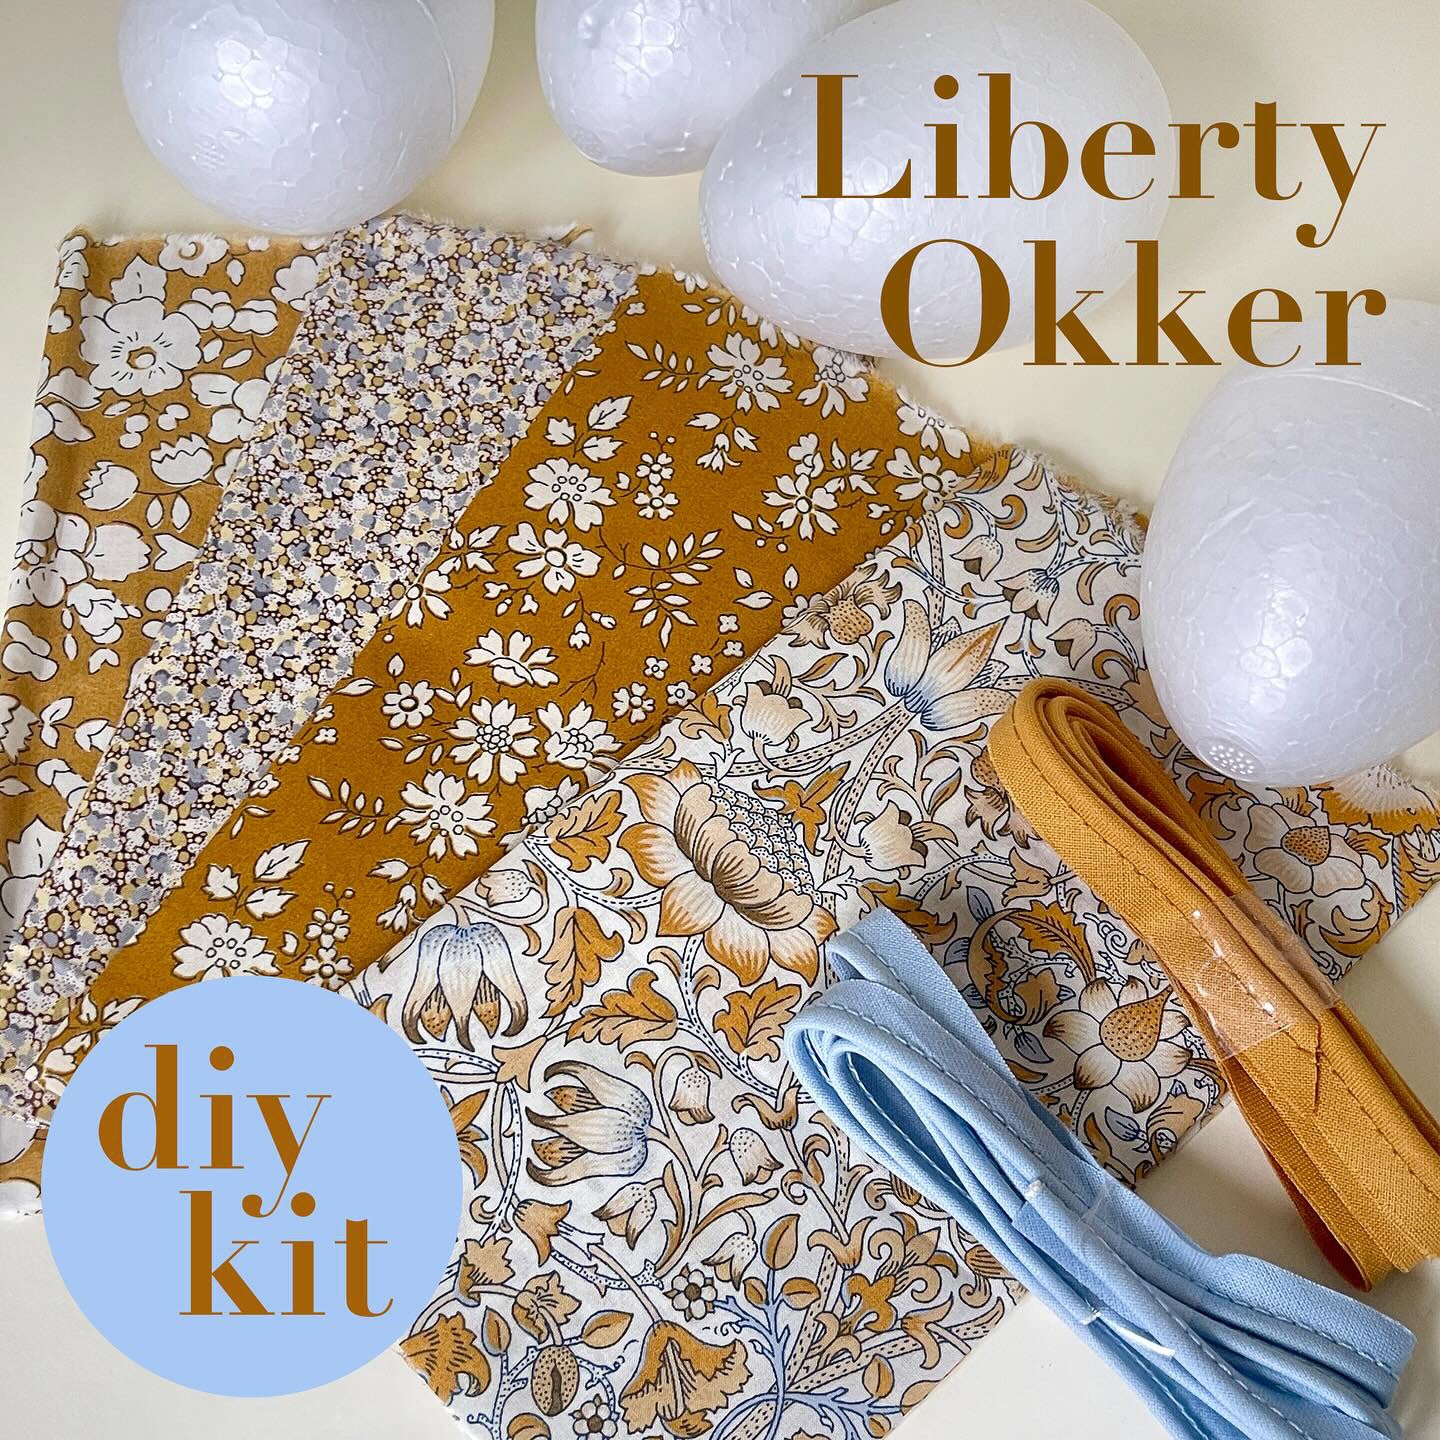 Diy-kit: 4 stk. Påskeæg / Liberty Okker